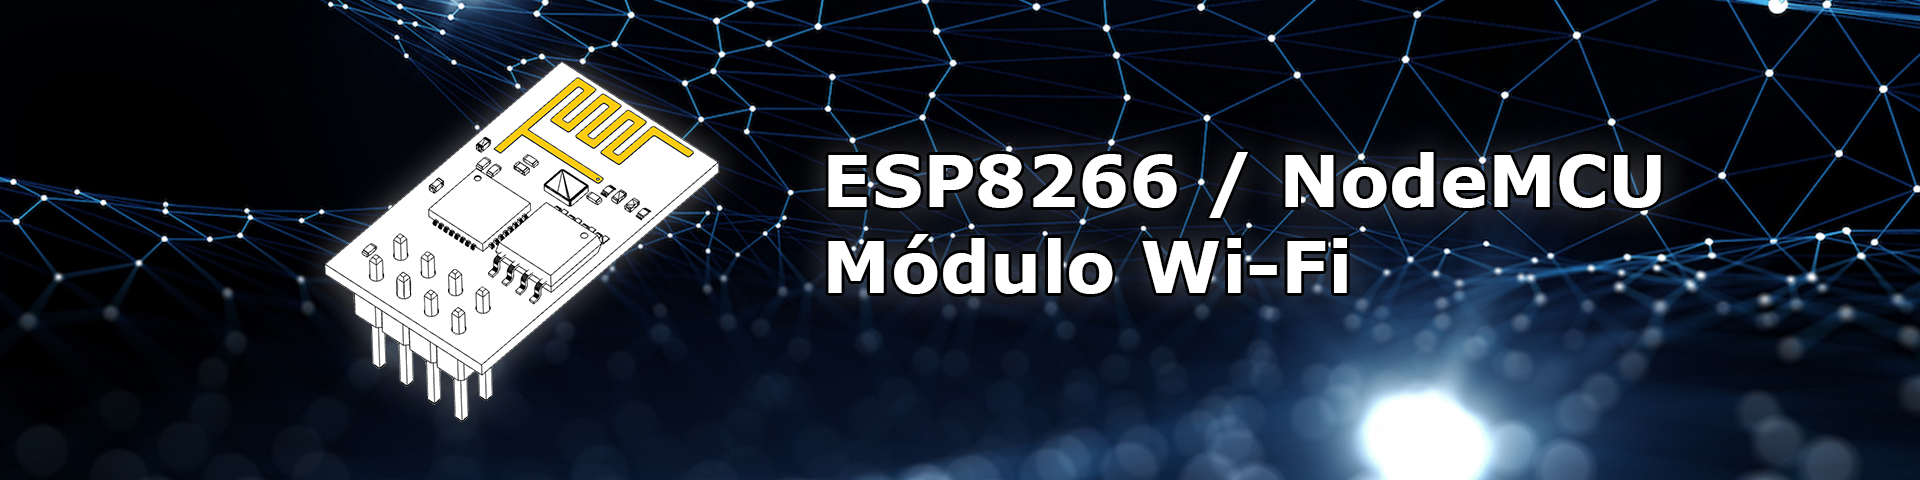 Conociendo ESP8266 / NodeMCU, el módulo WIFI para IoT